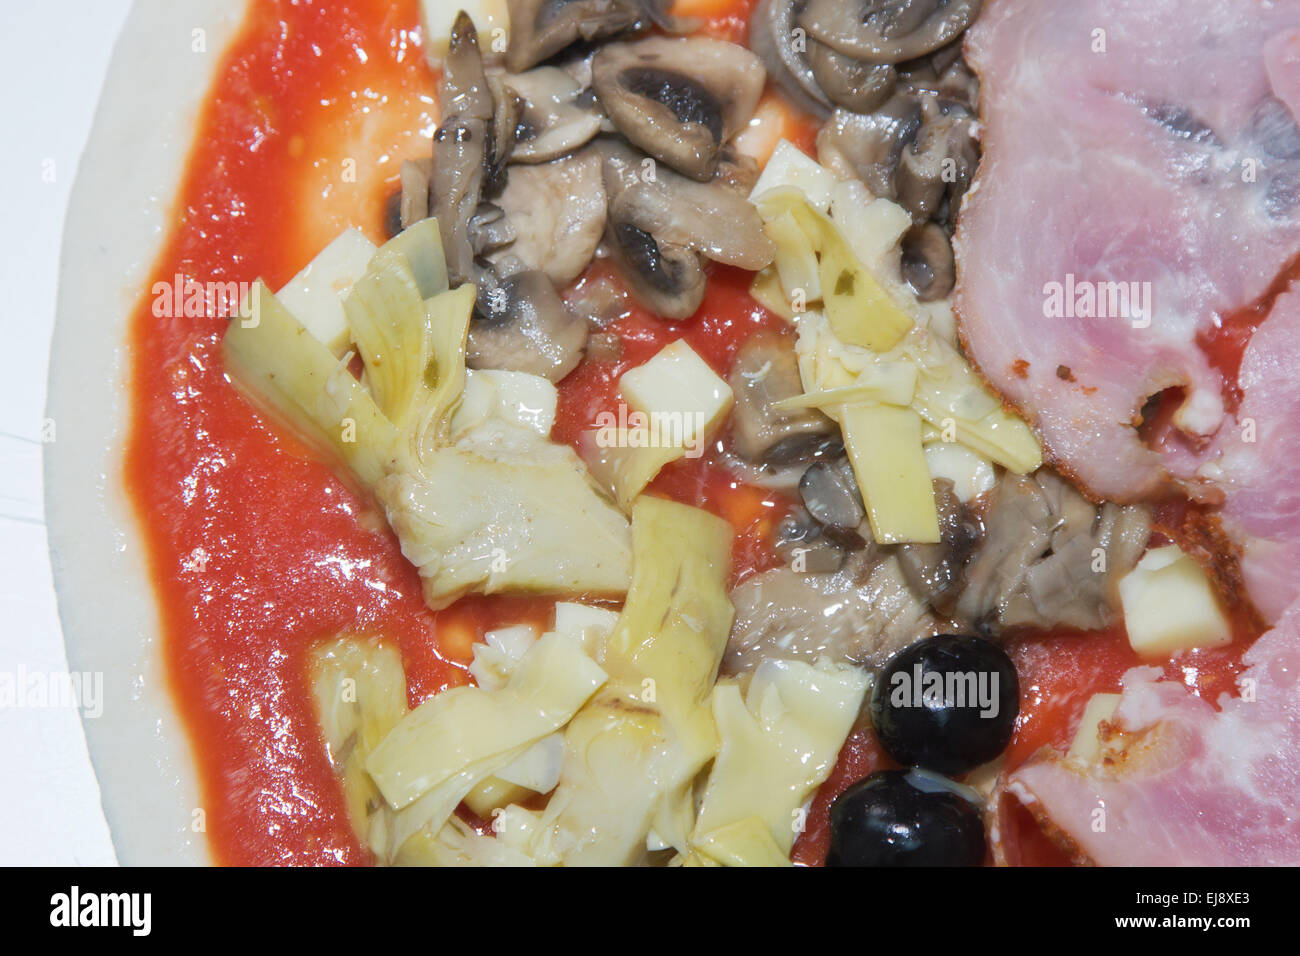 La pizza preparata con funghi Foto Stock